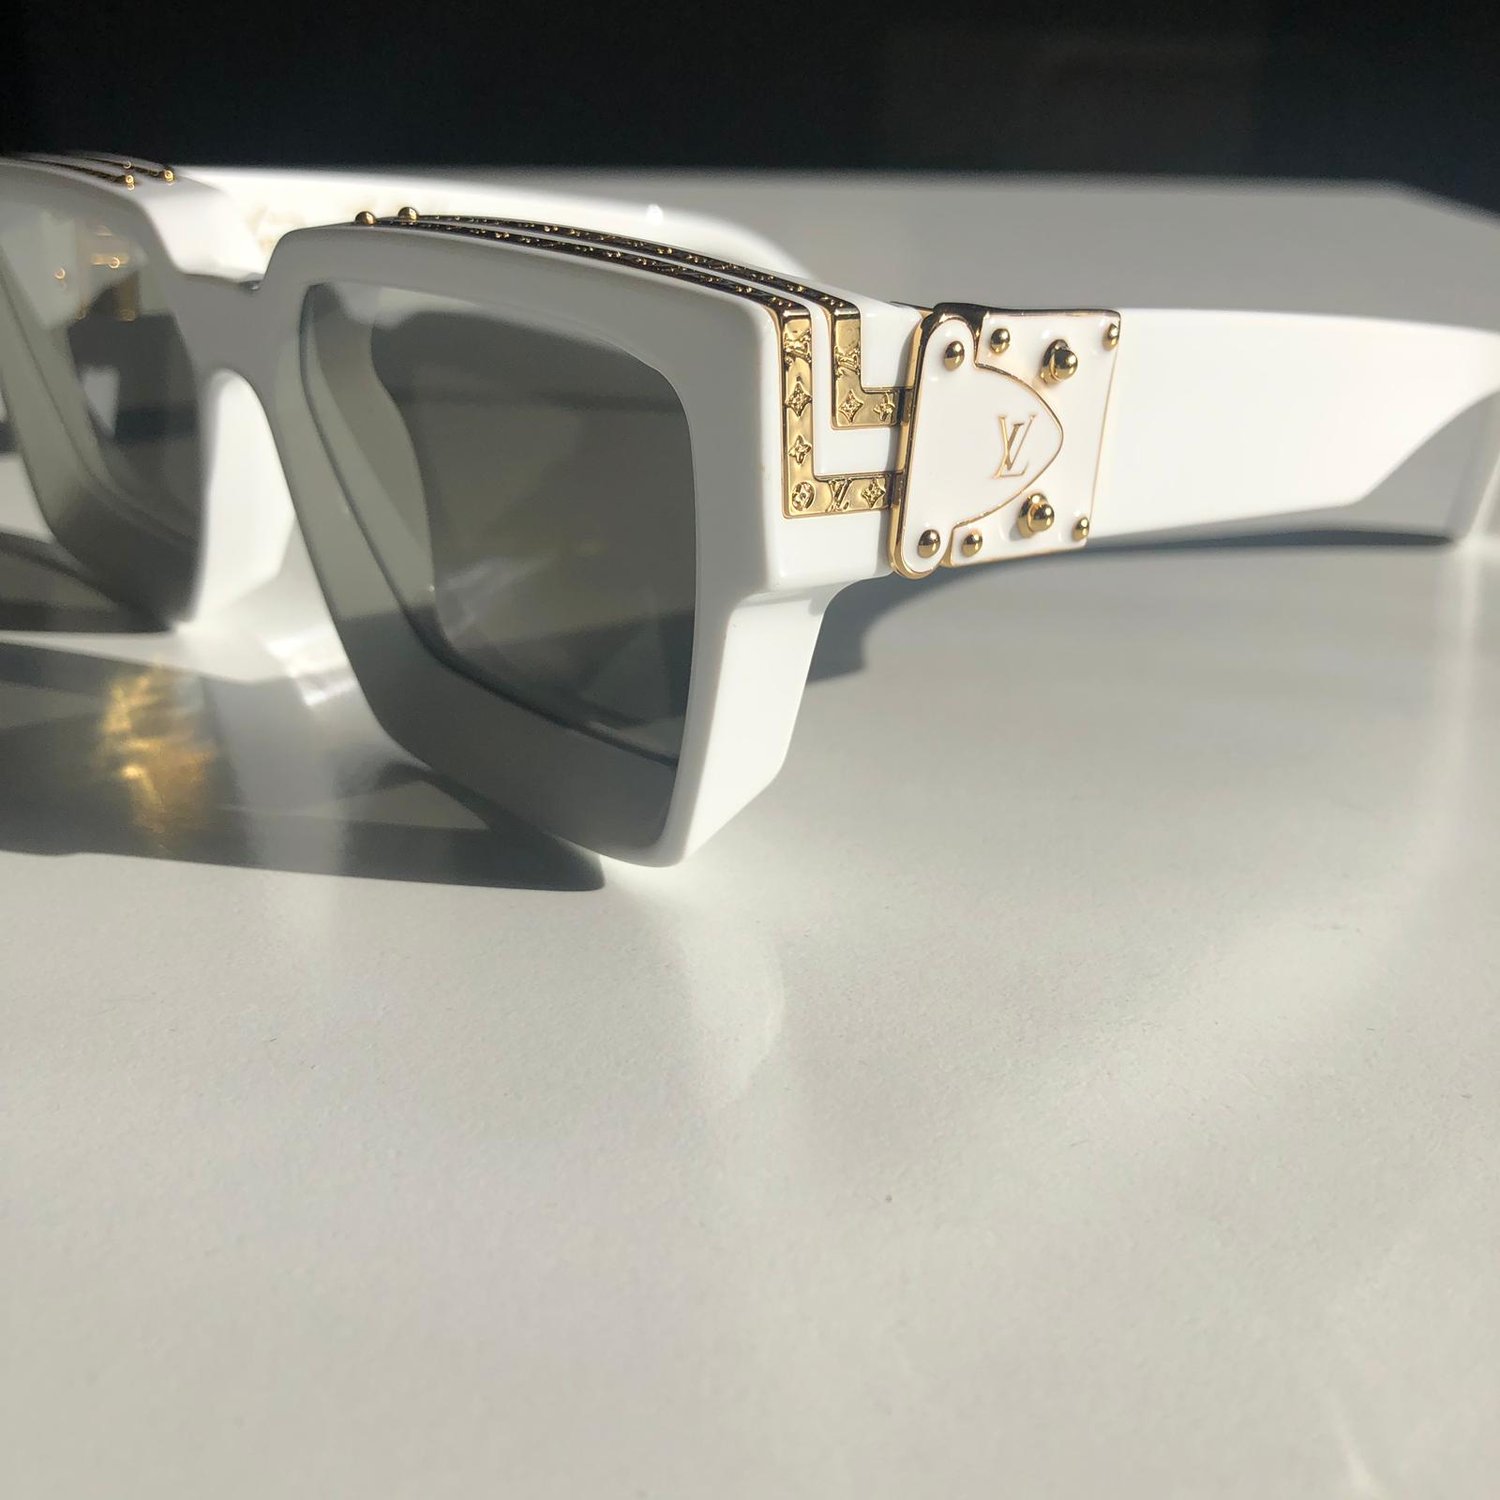 Louis Vuitton Sunglasses by Virgil Abloh Credit: @louisvuitton